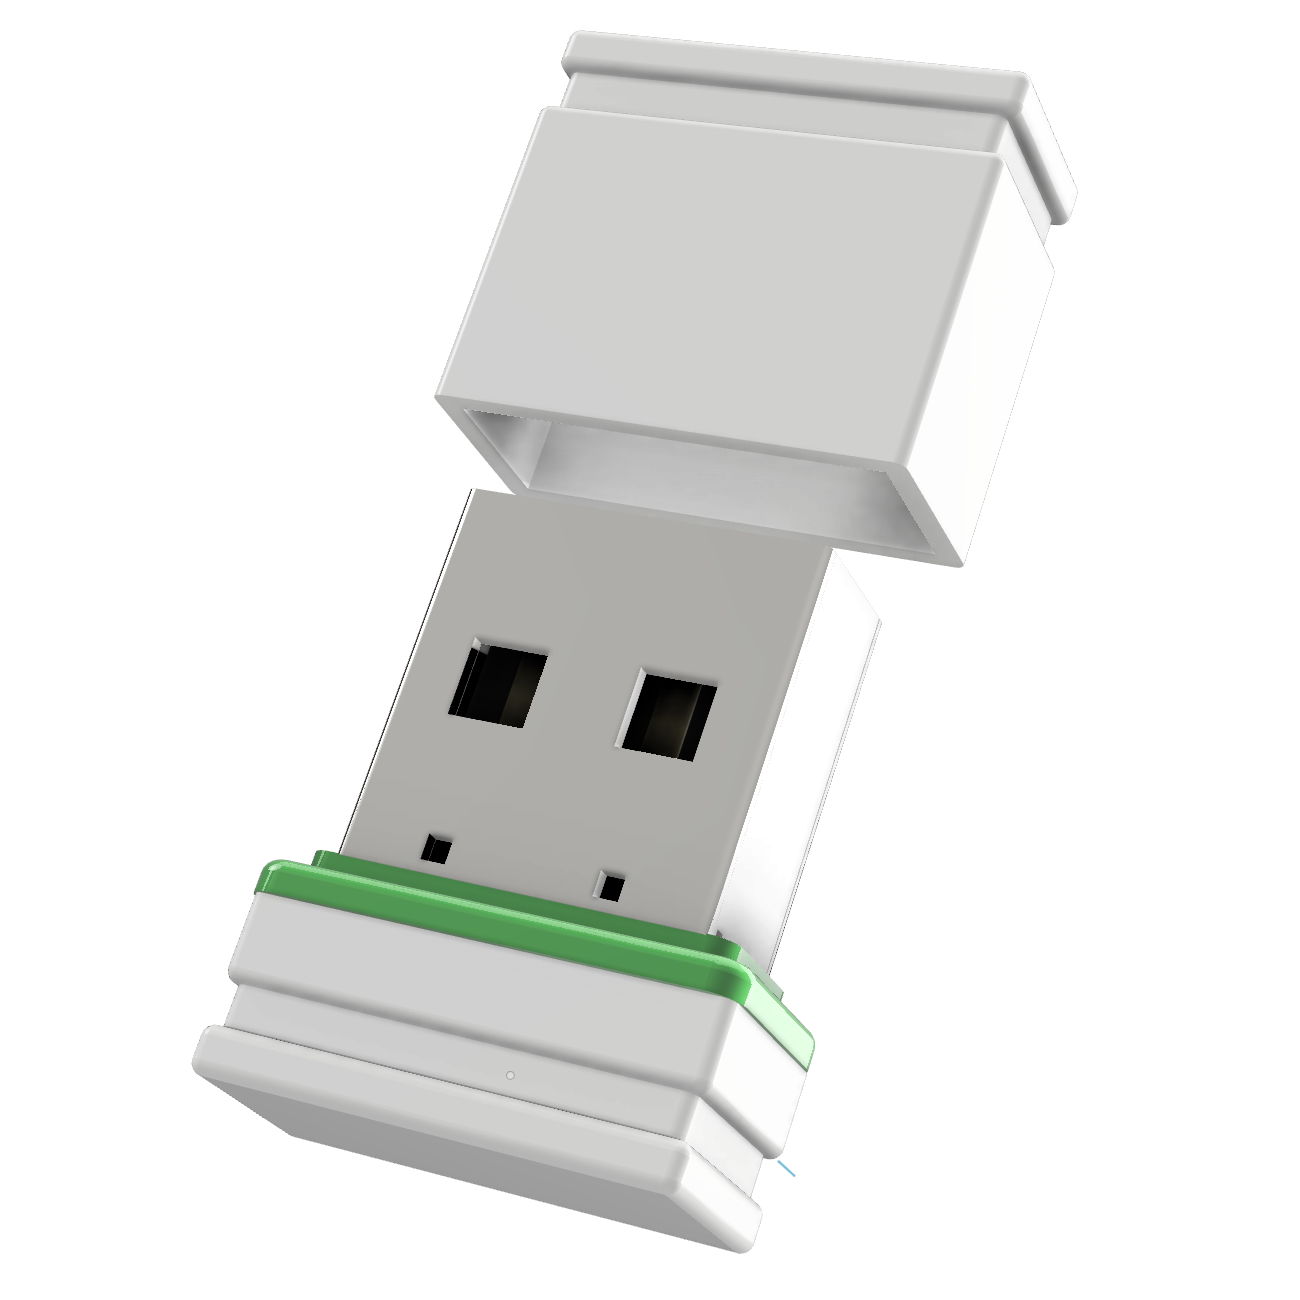 8 USB GERMANY ®ULTRA USB-Stick (Weiss/Grün, P1 Mini GB)